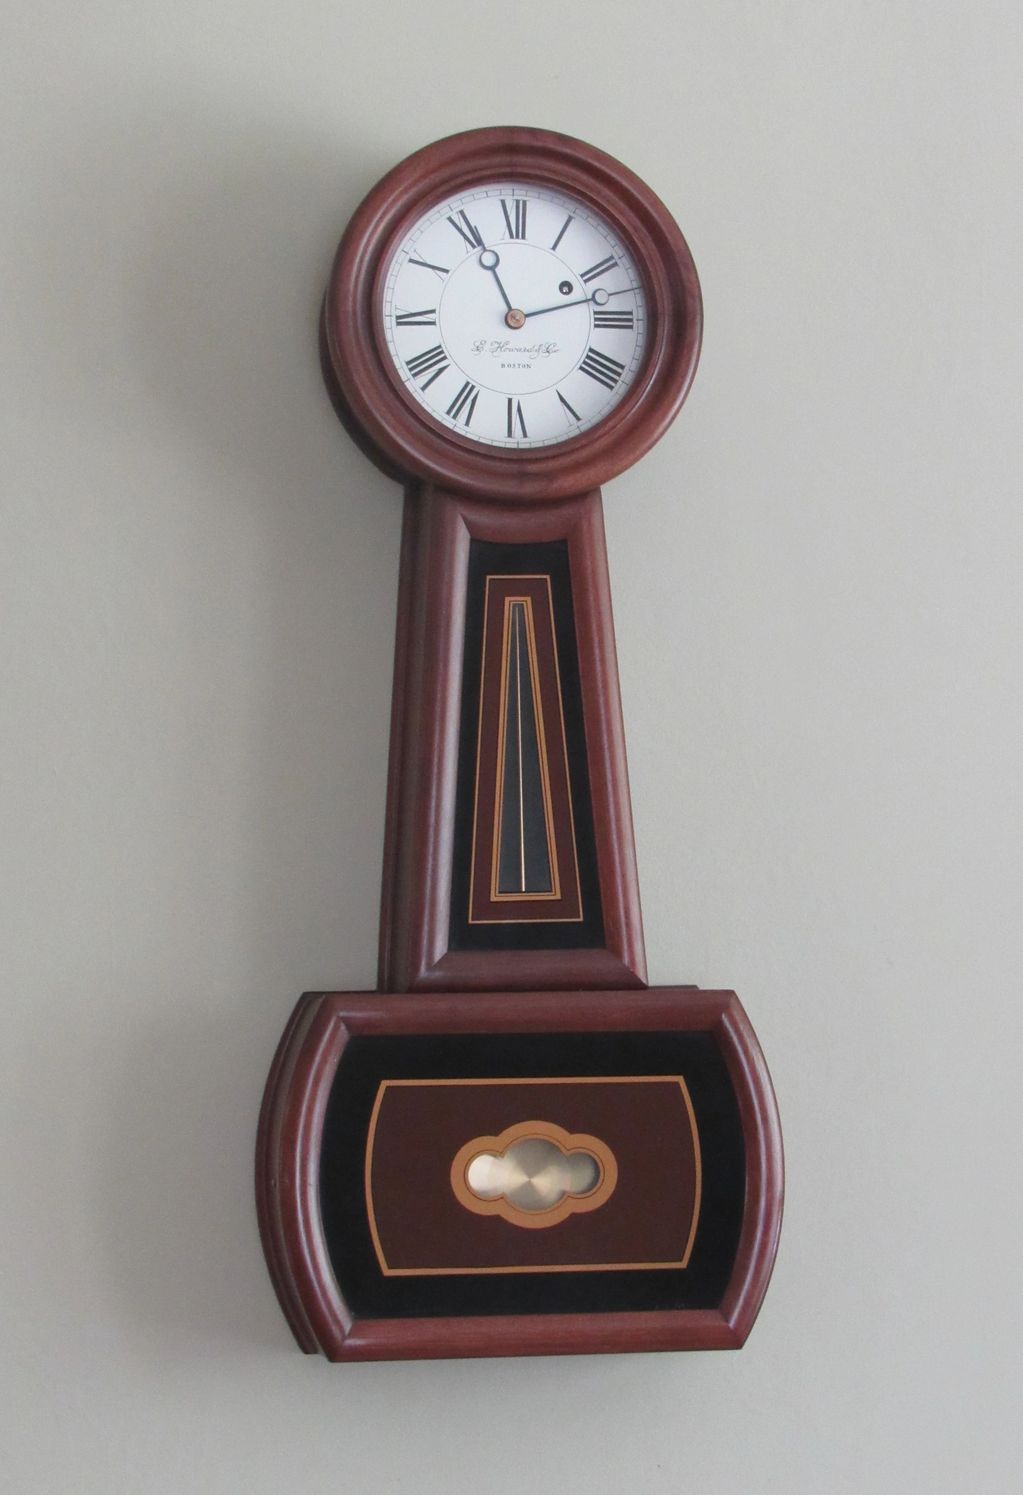 E Howard Company
Boston MA
Banjo Clock #5

Reissue 1976   #46

Pompeo Auctions